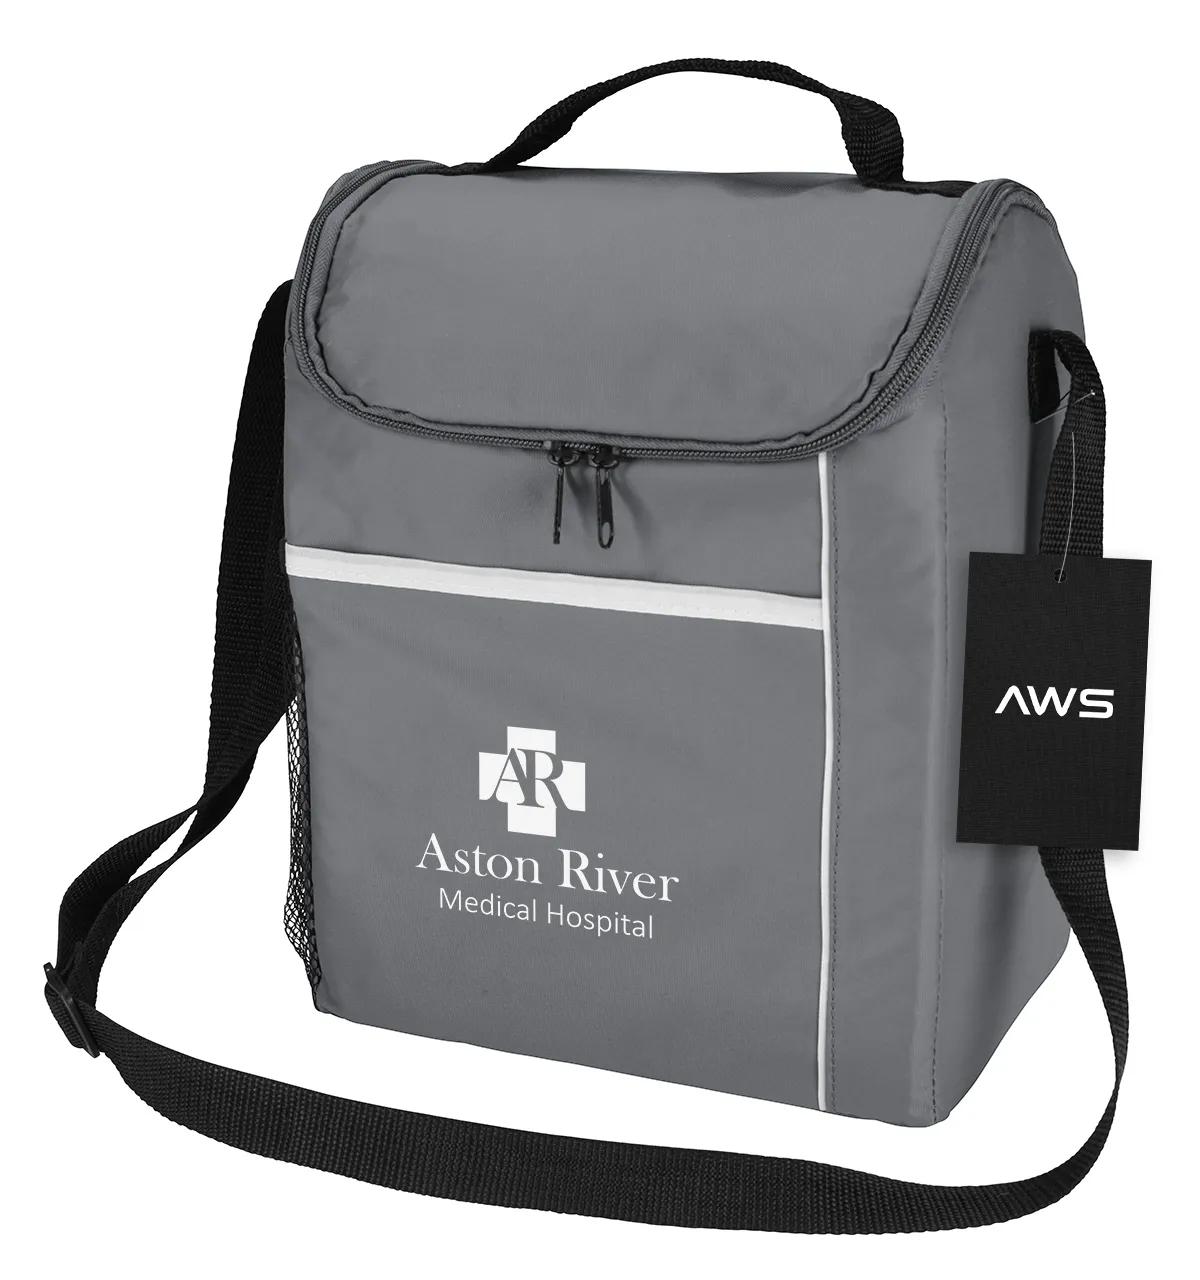 AWS Conrad Cooler Bag 4 of 4